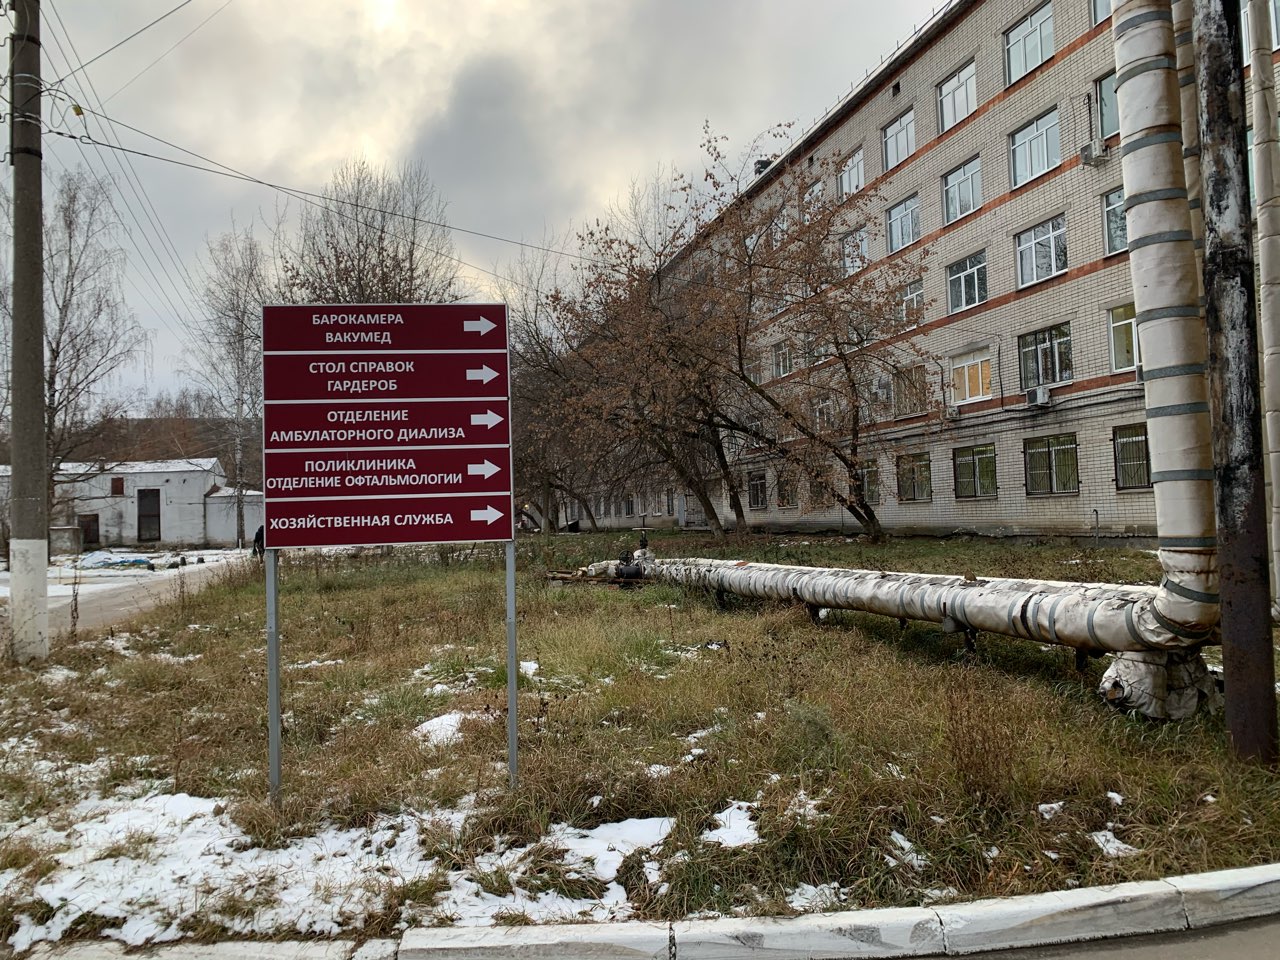 Почти 20 млн рублей потратят на обновление поликлиник №31 в Нижнем Новгороде - фото 1